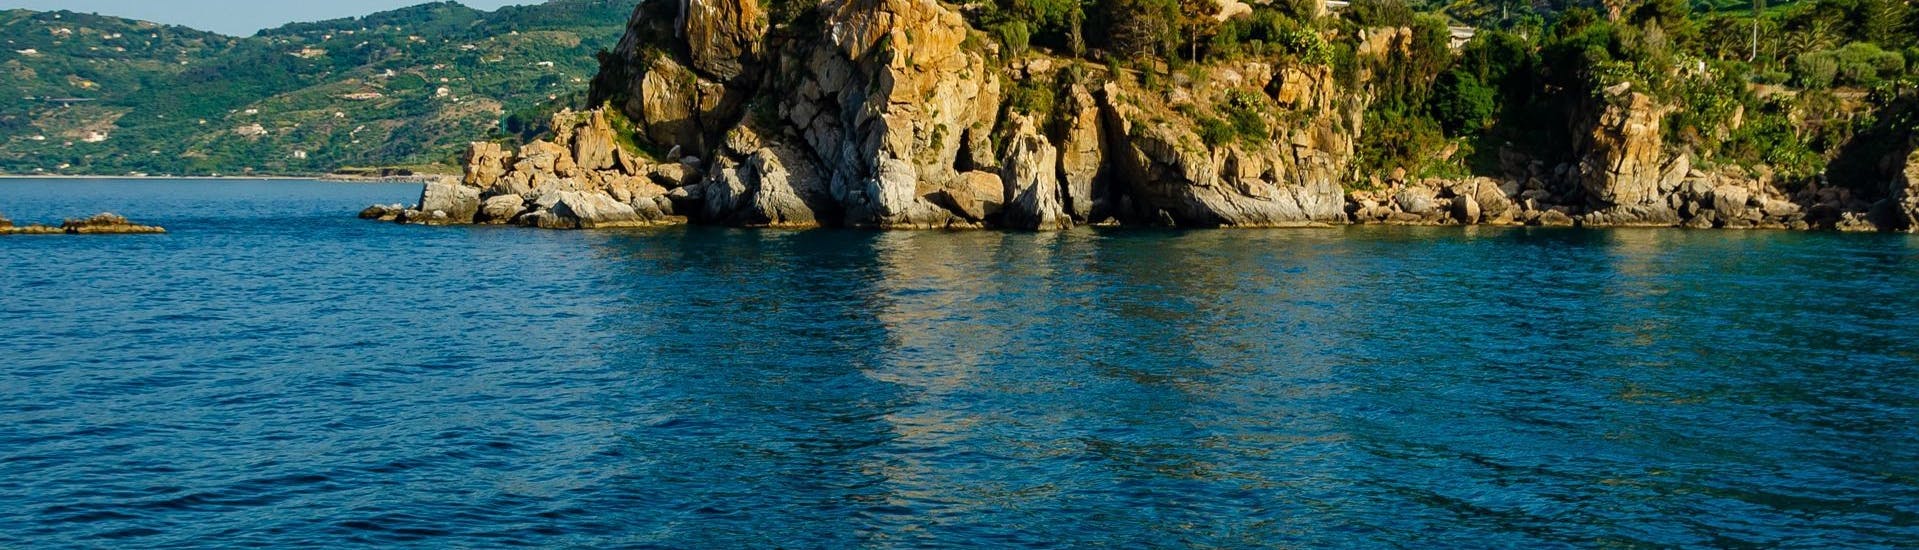 Foto van de kust van Cefalù genomen vanaf een boot van Marina Yachting Cefalù tijdens de privéboottocht langs de kust van Cefalù.